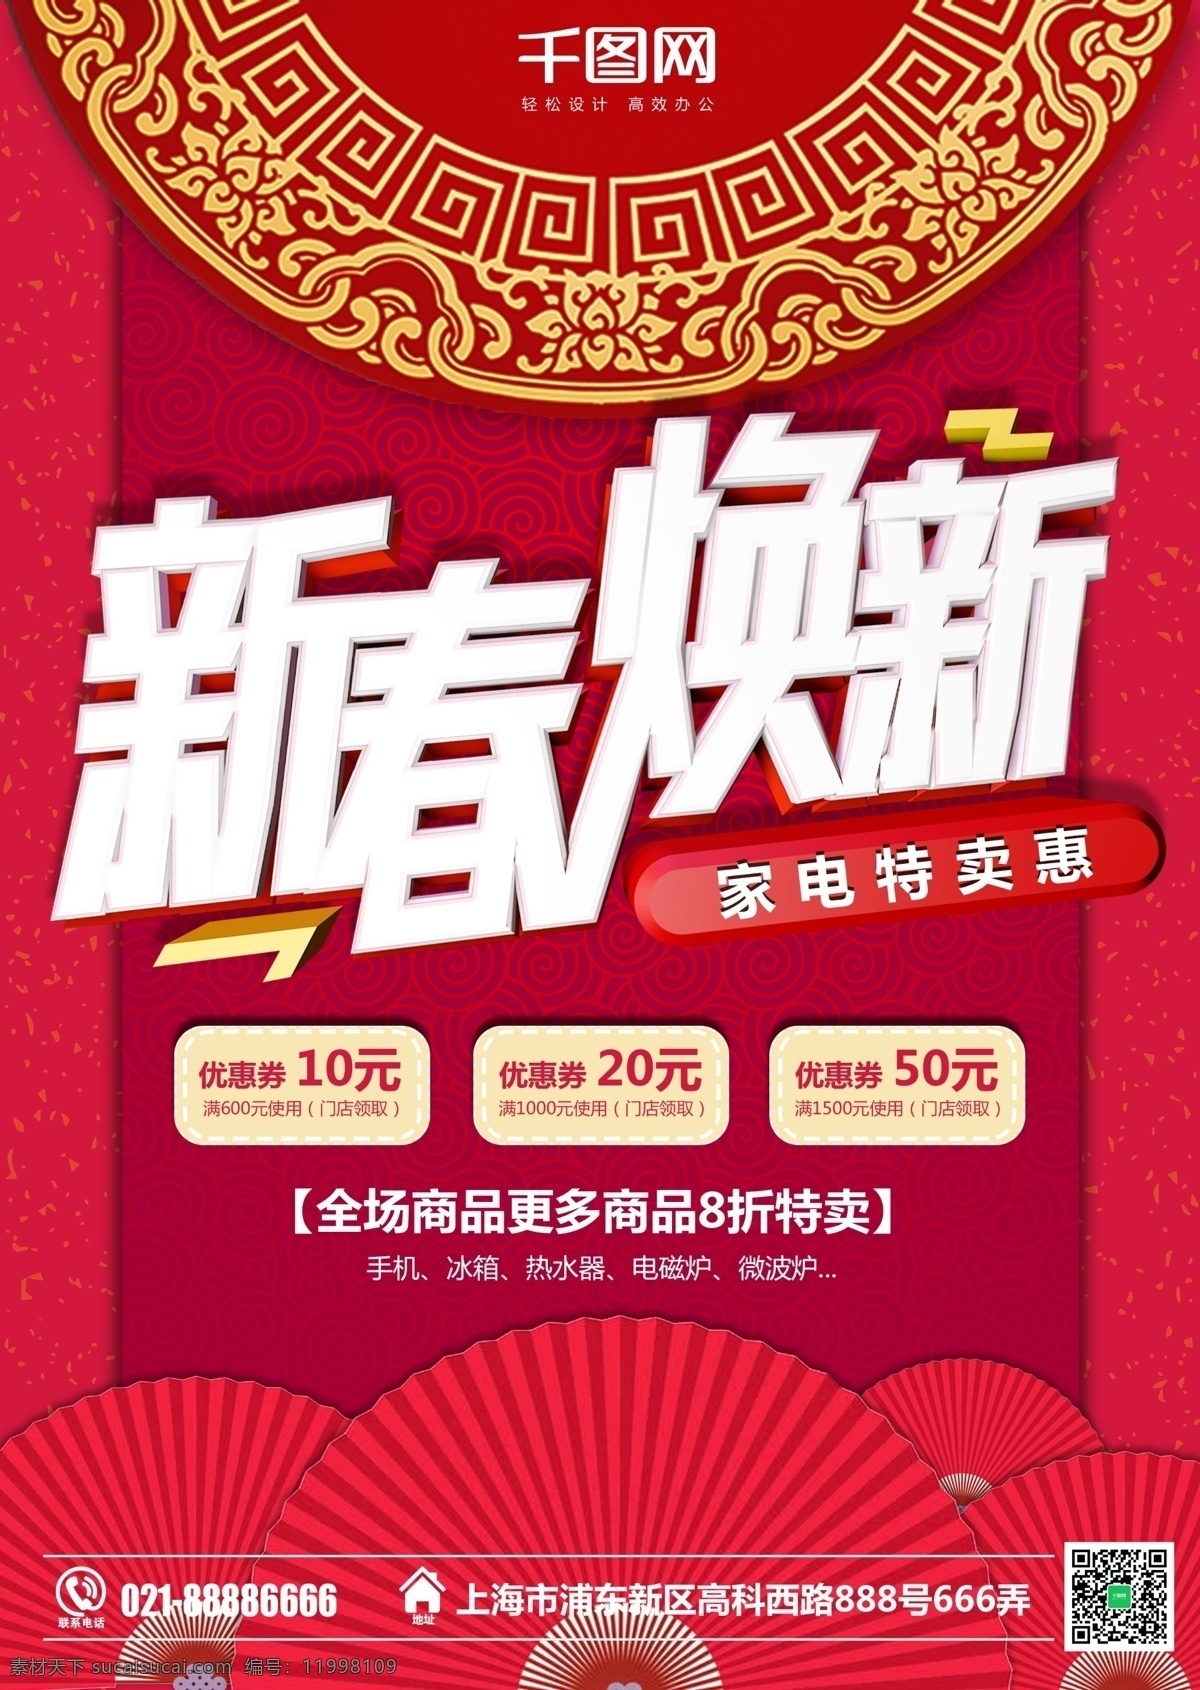 红色 喜庆 新春 家电 促销 dm 春节 商场 超市 新年 过年 特卖 惠 满减